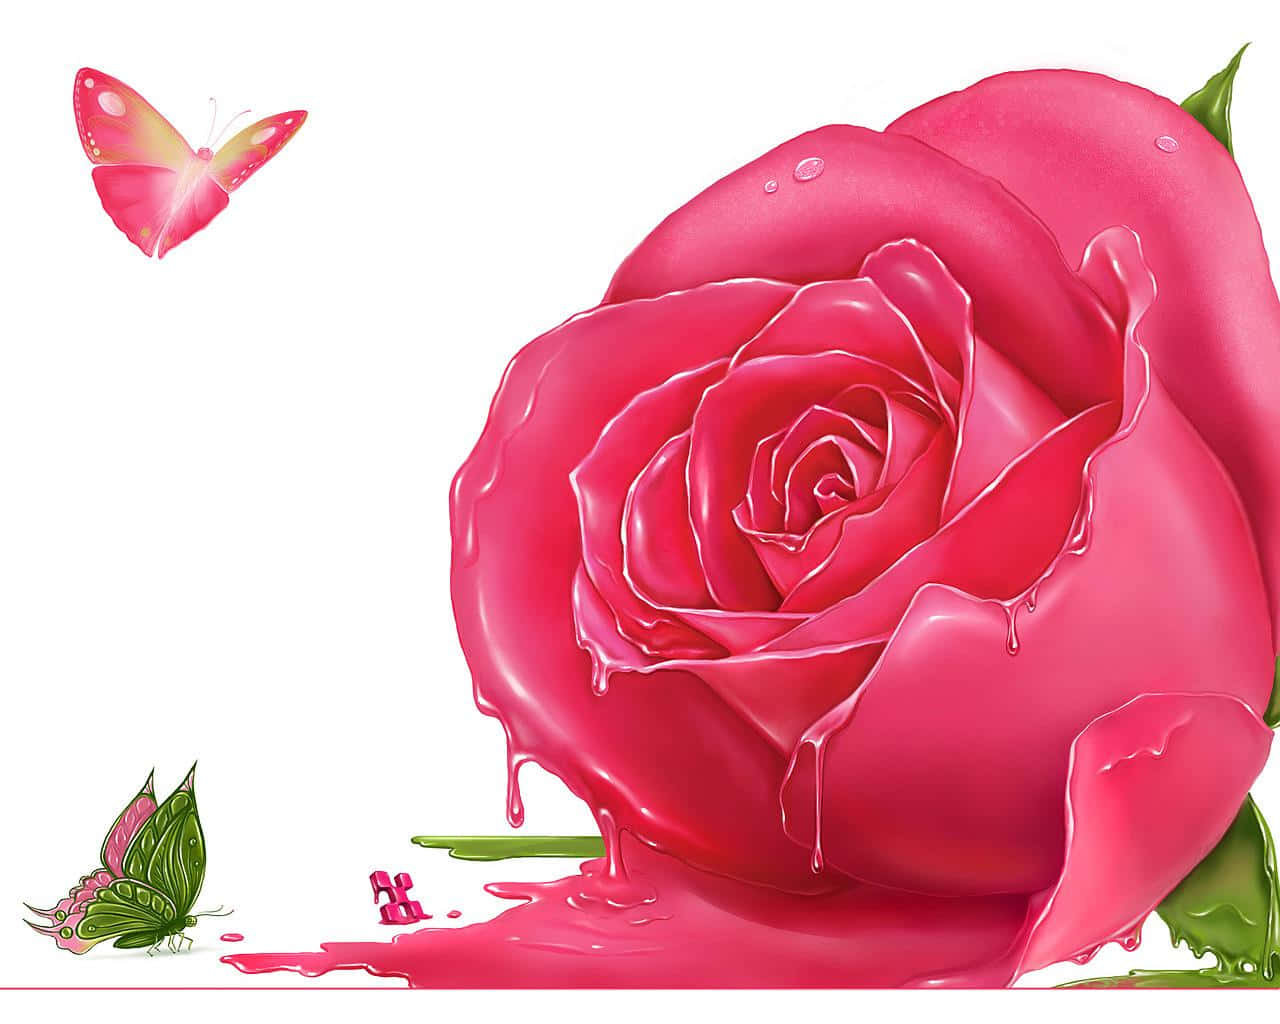 Soft pink rose bloom against a tender lavender backdrop